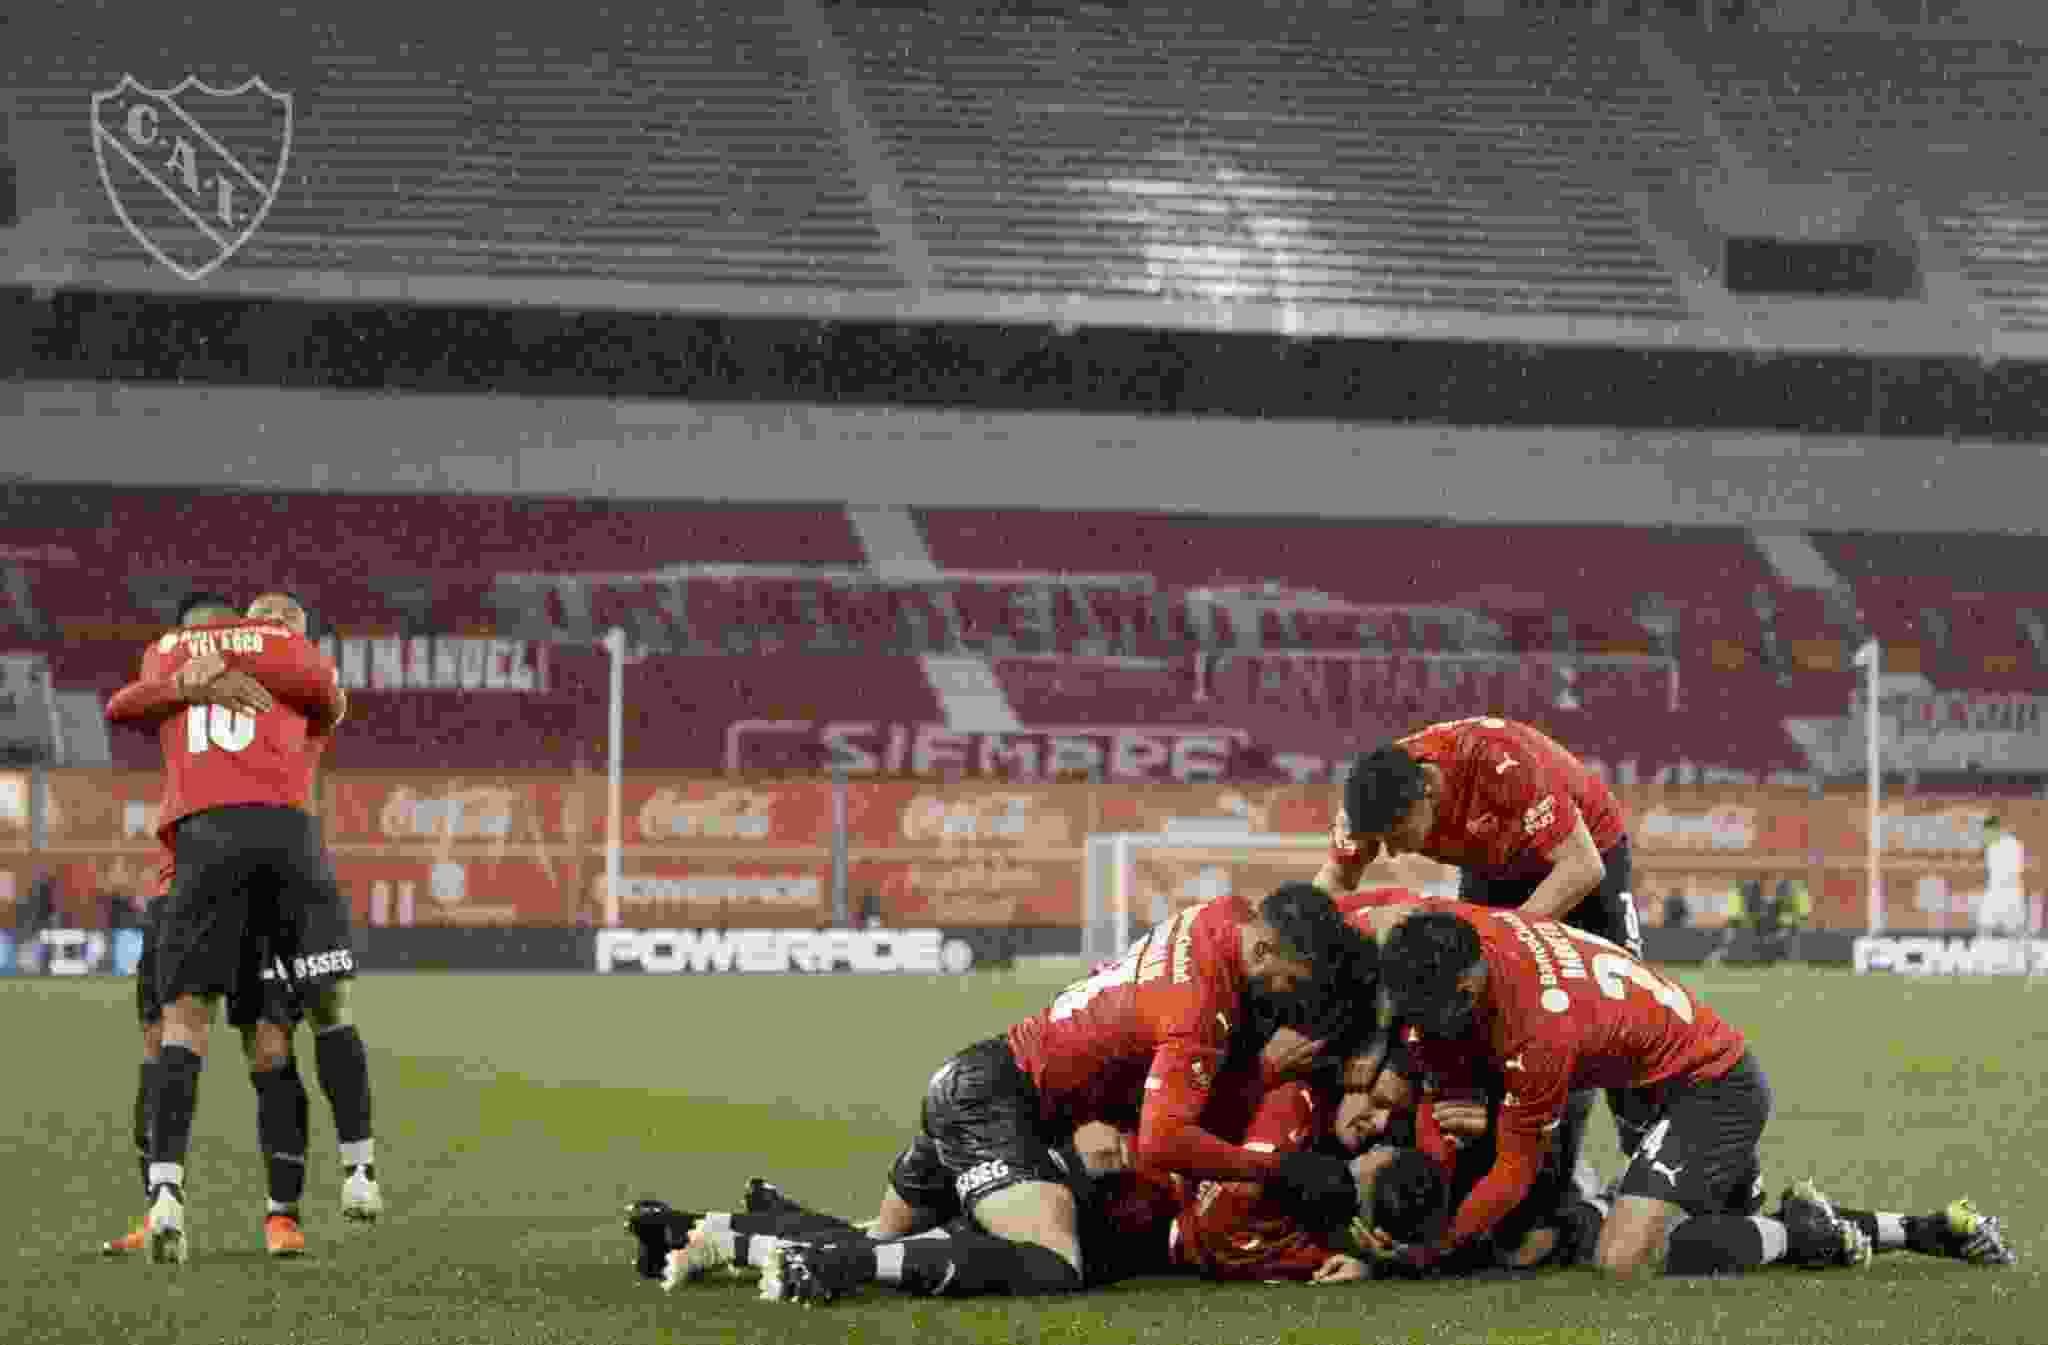 Bajo una lluvia torrencial, Independiente derrotó a Racing y volvió a poner las cosas en su lugar. Los jugadores se abrazan y lo gritan como cualquiera de nosotros.